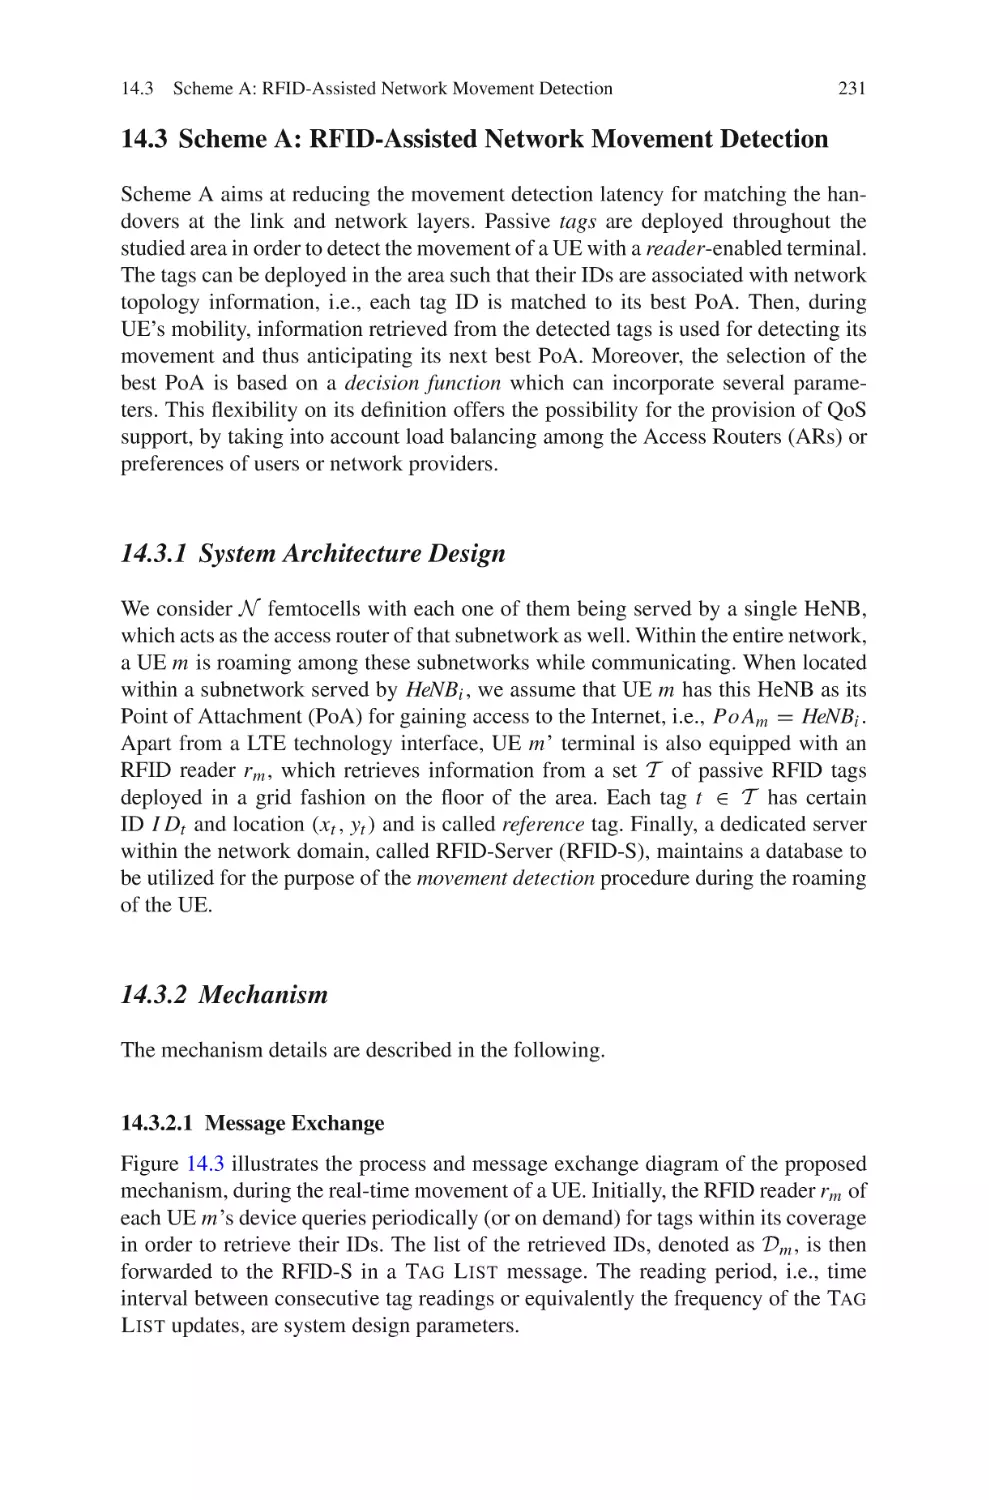 14.3  Scheme A
14.3.1  System Architecture Design
14.3.2  Mechanism